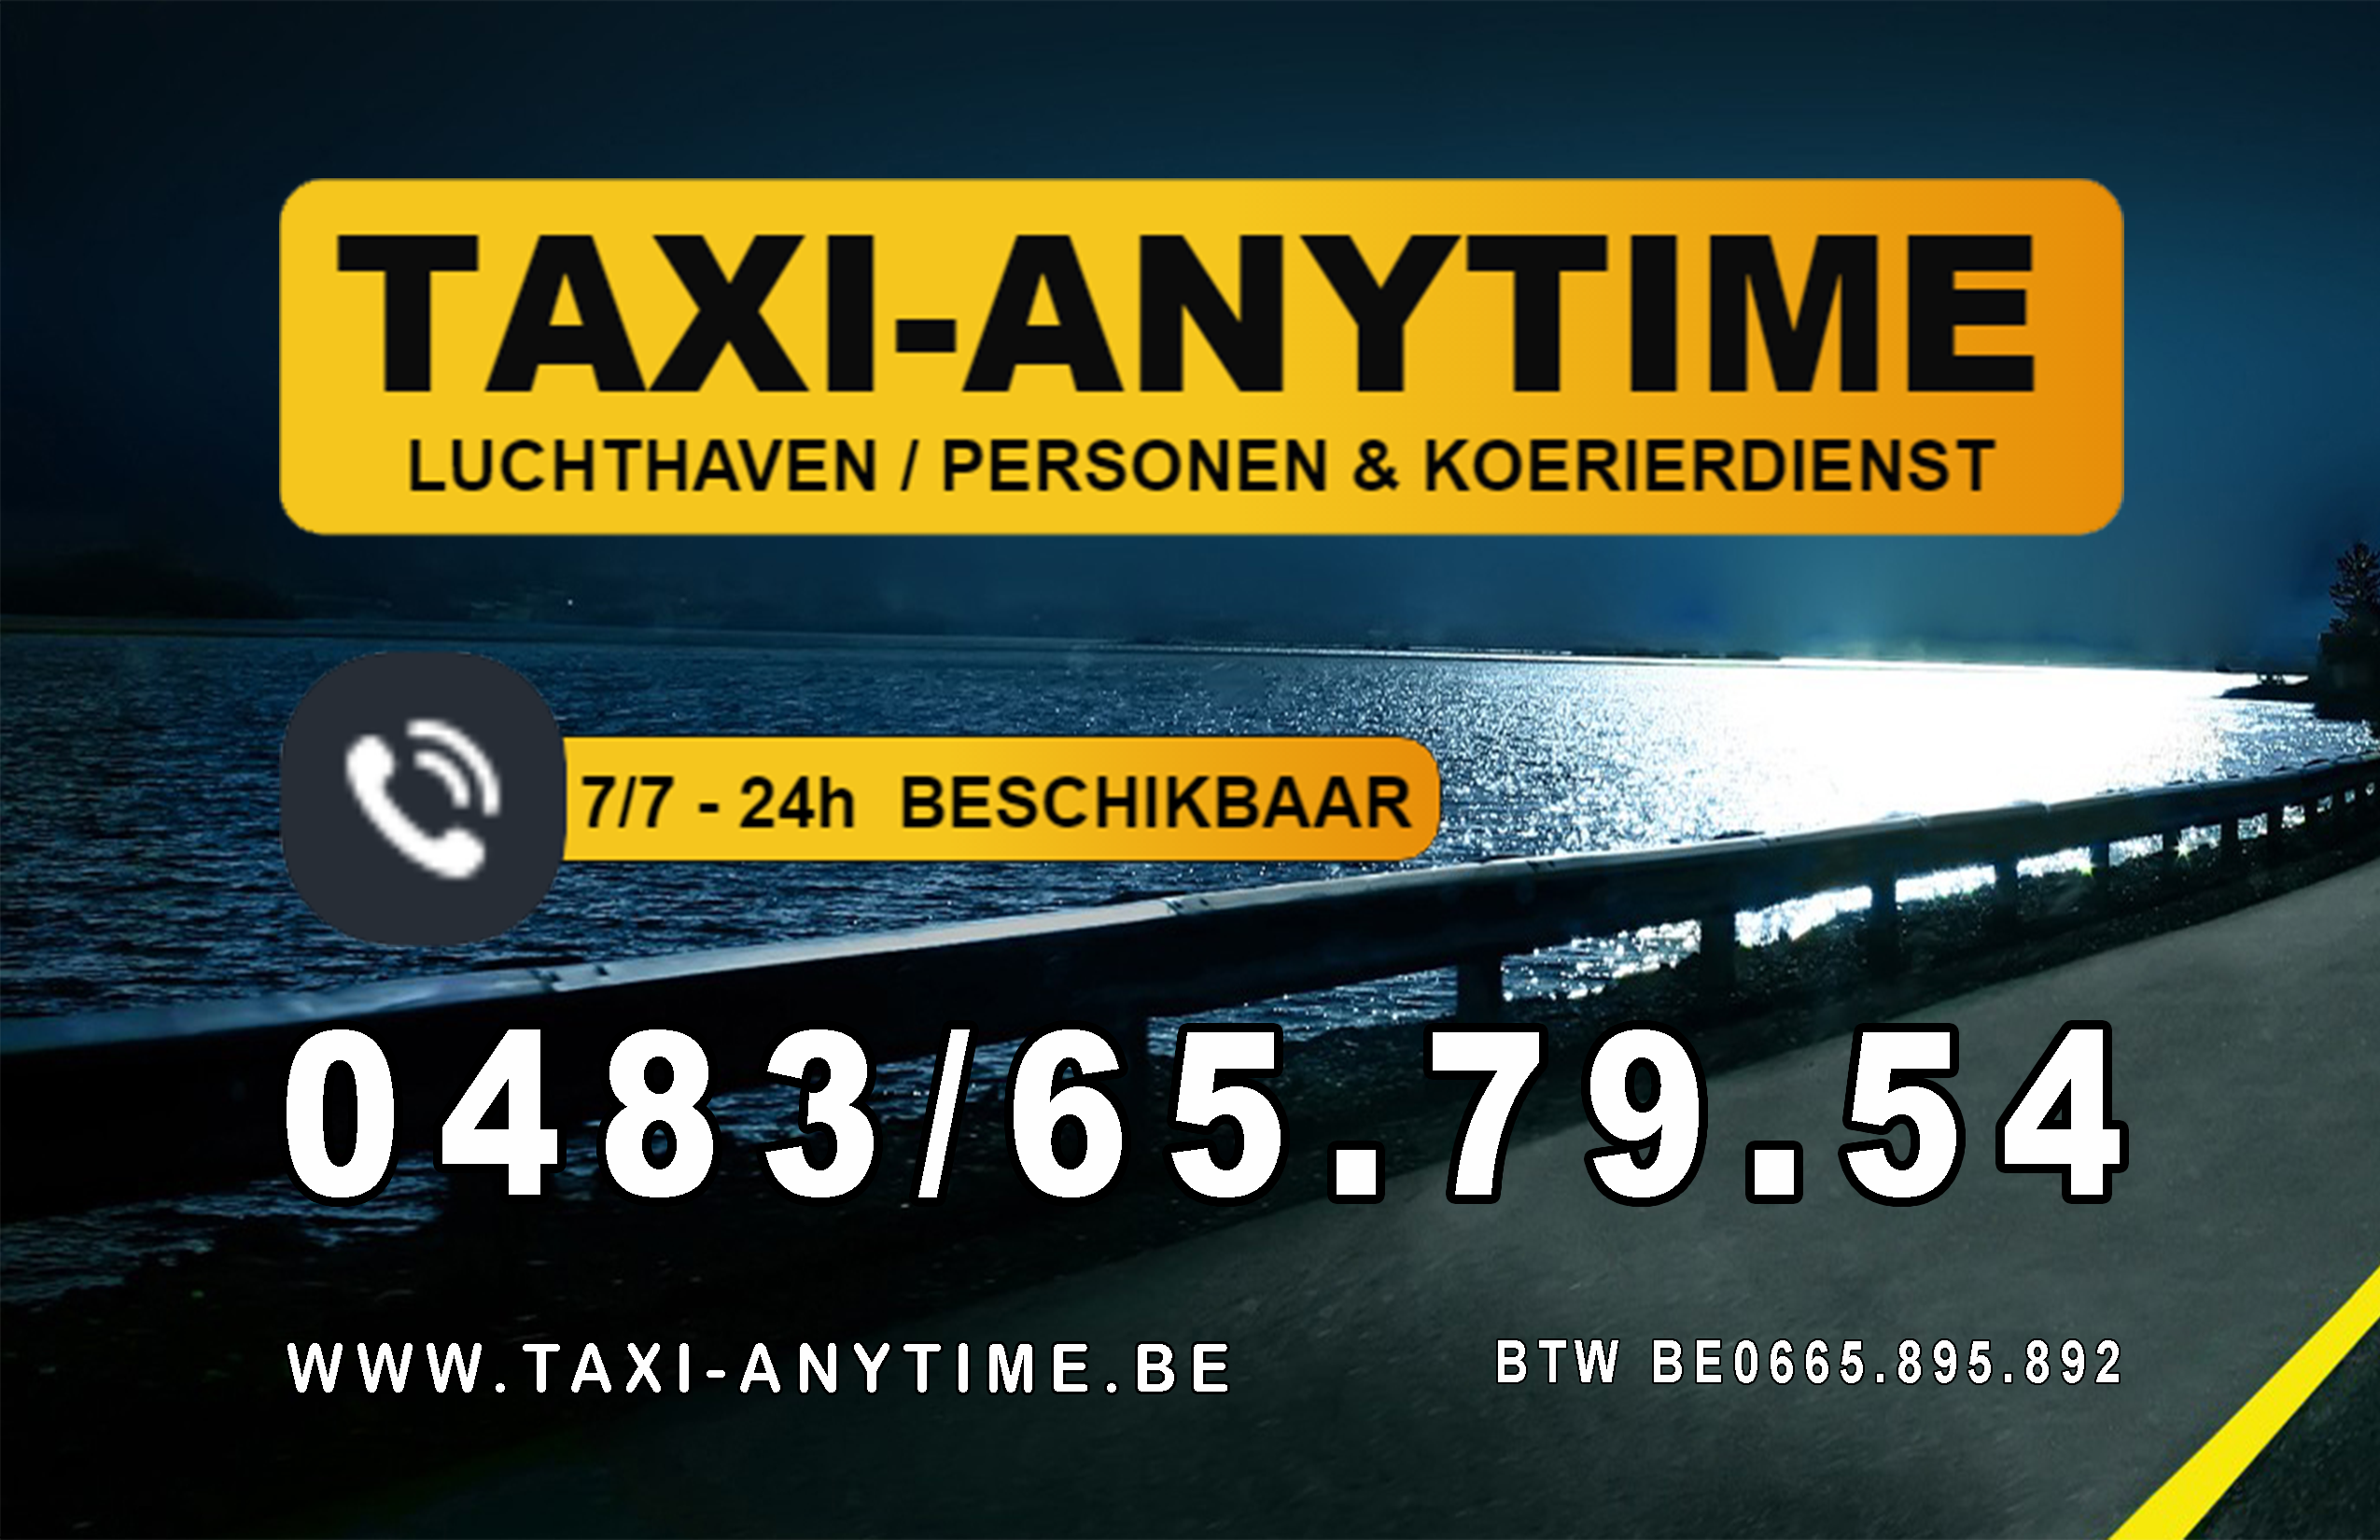 taxibedrijven met luchthavenvervoer Aalst Taxi-anytime